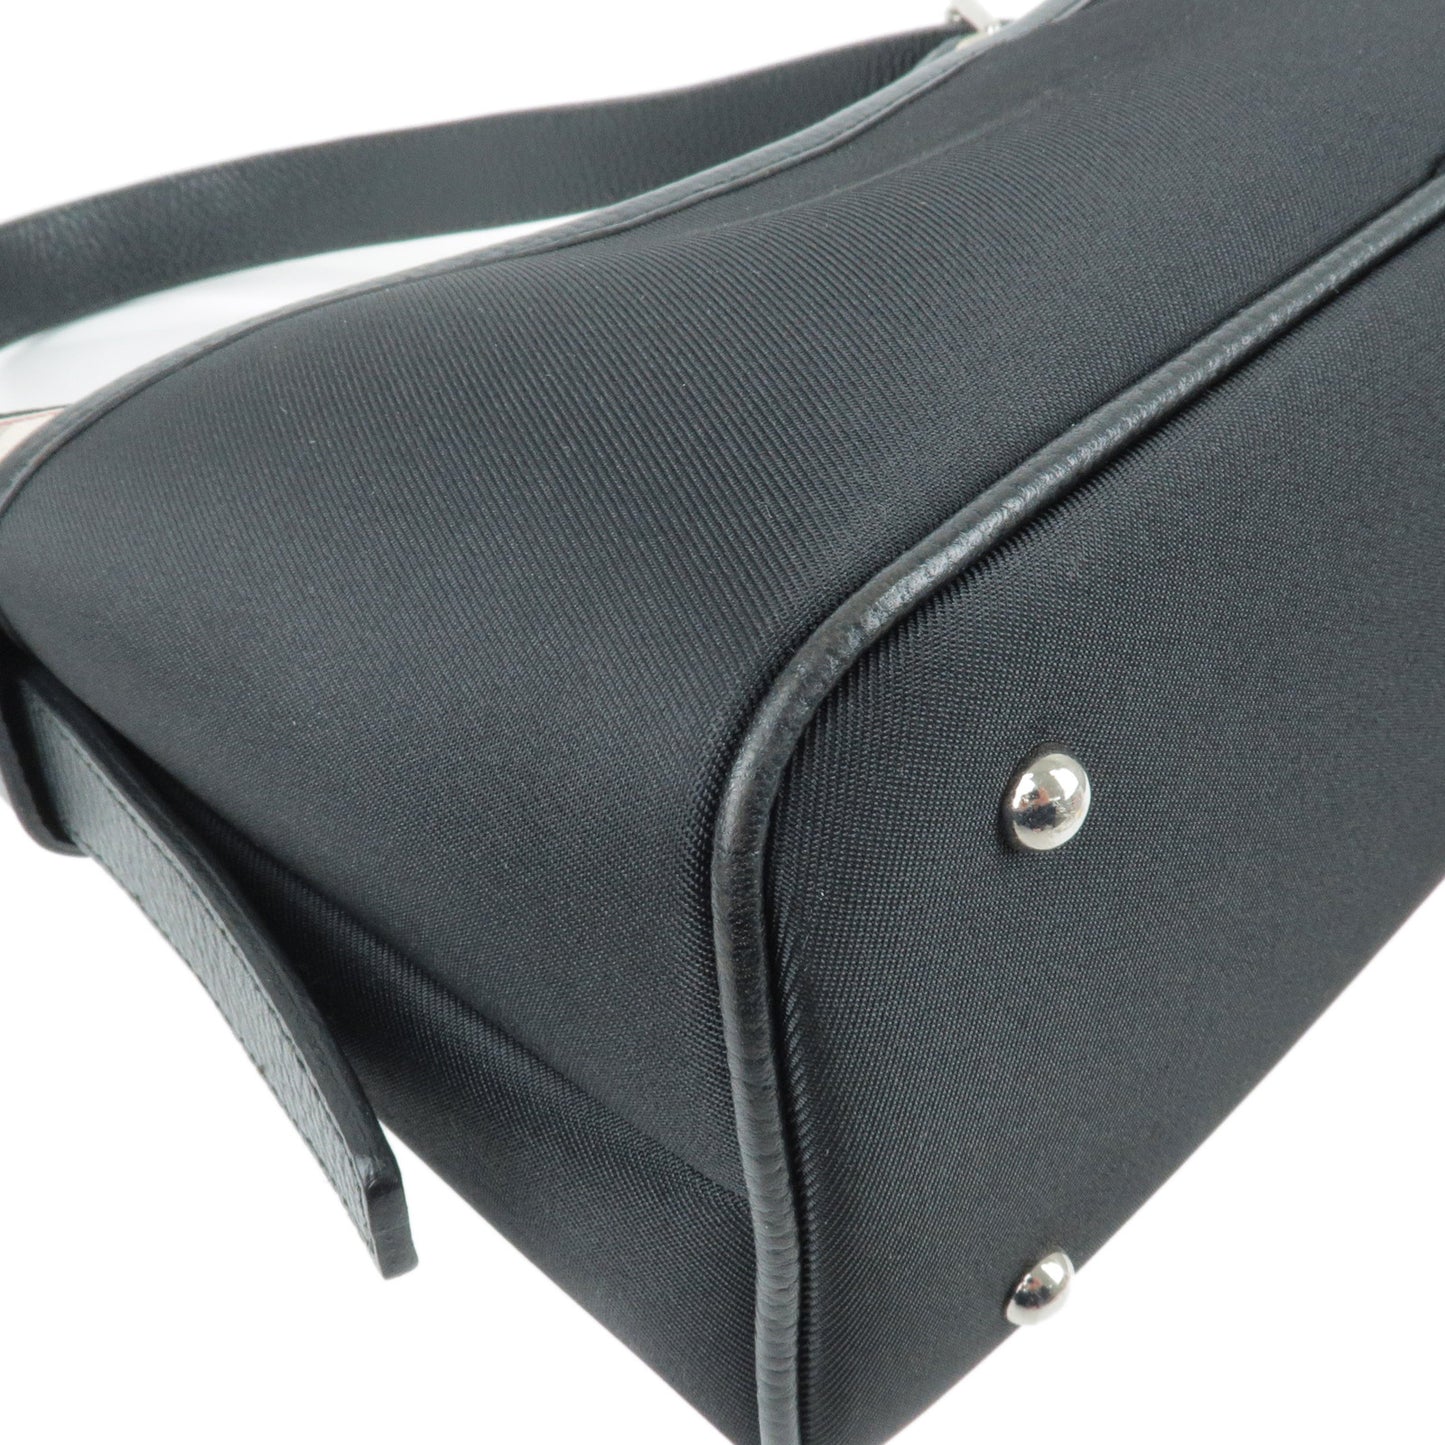 BURBERRY Canvas Leather Shoulder Bag Hand Bag Beige Black